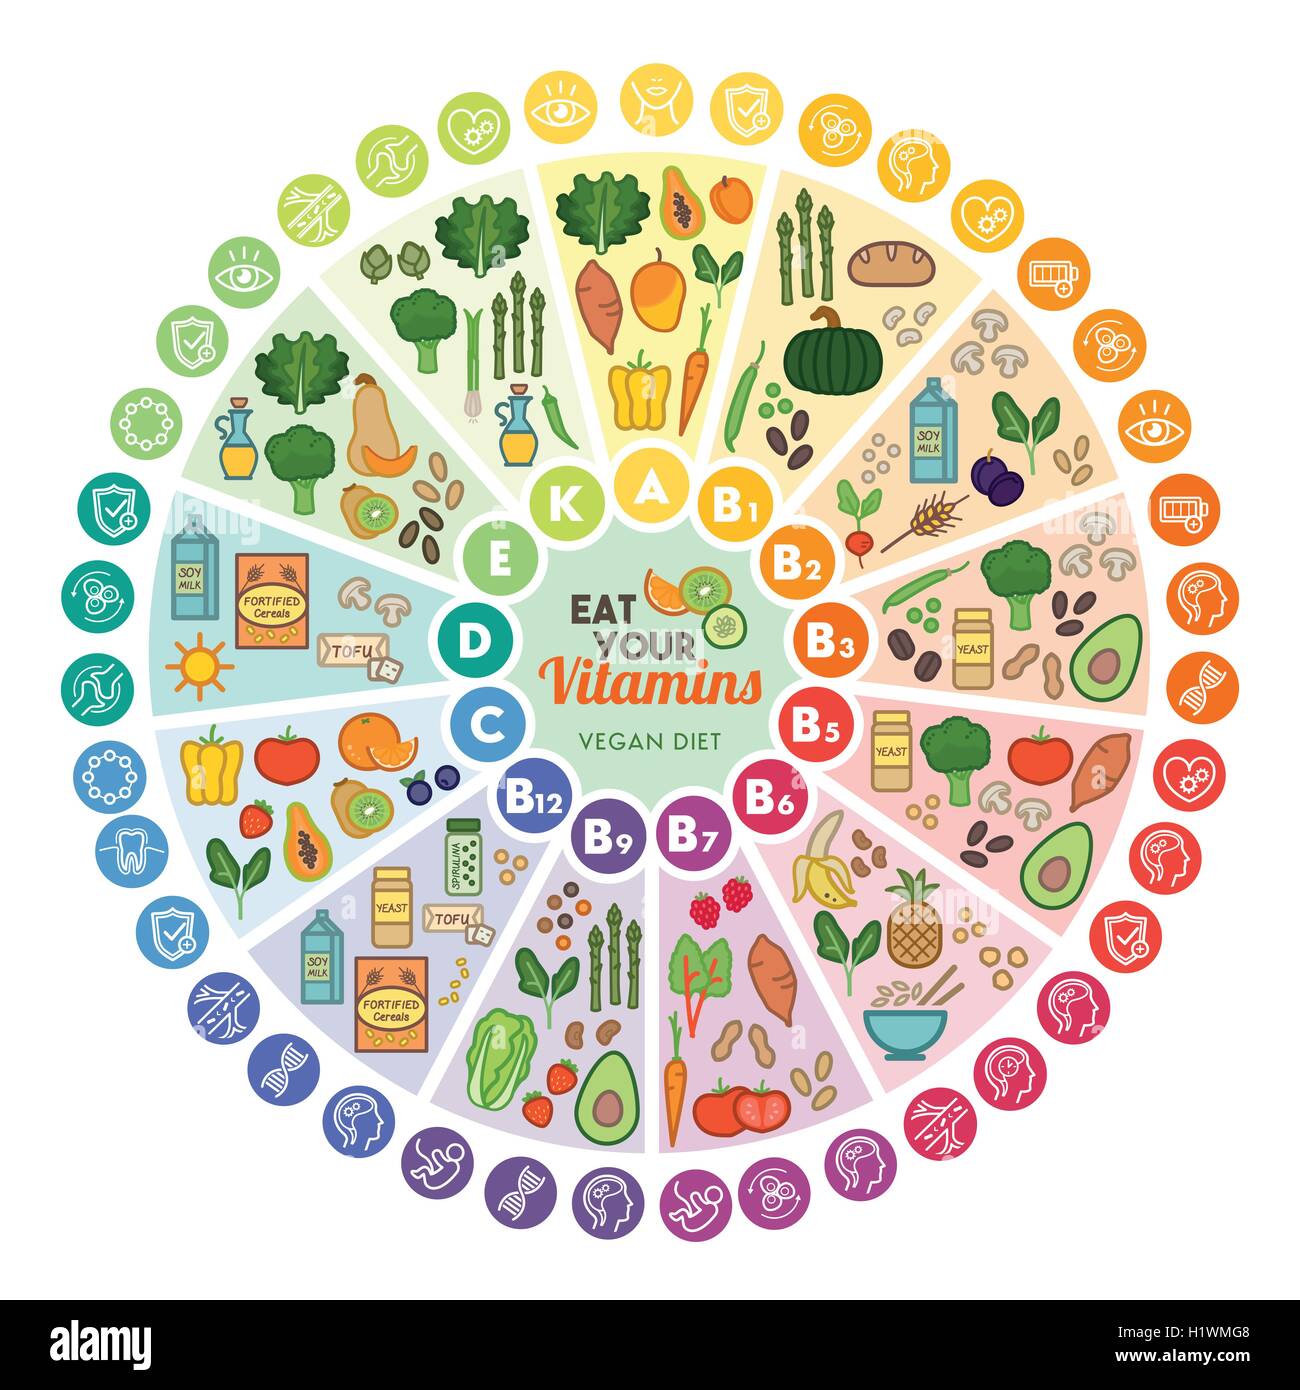 Les sources de nourriture vegan vitamine et fonctions, roue arc-en-ciel graphique avec icônes de l'alimentation, la saine alimentation et de la santé concept Illustration de Vecteur